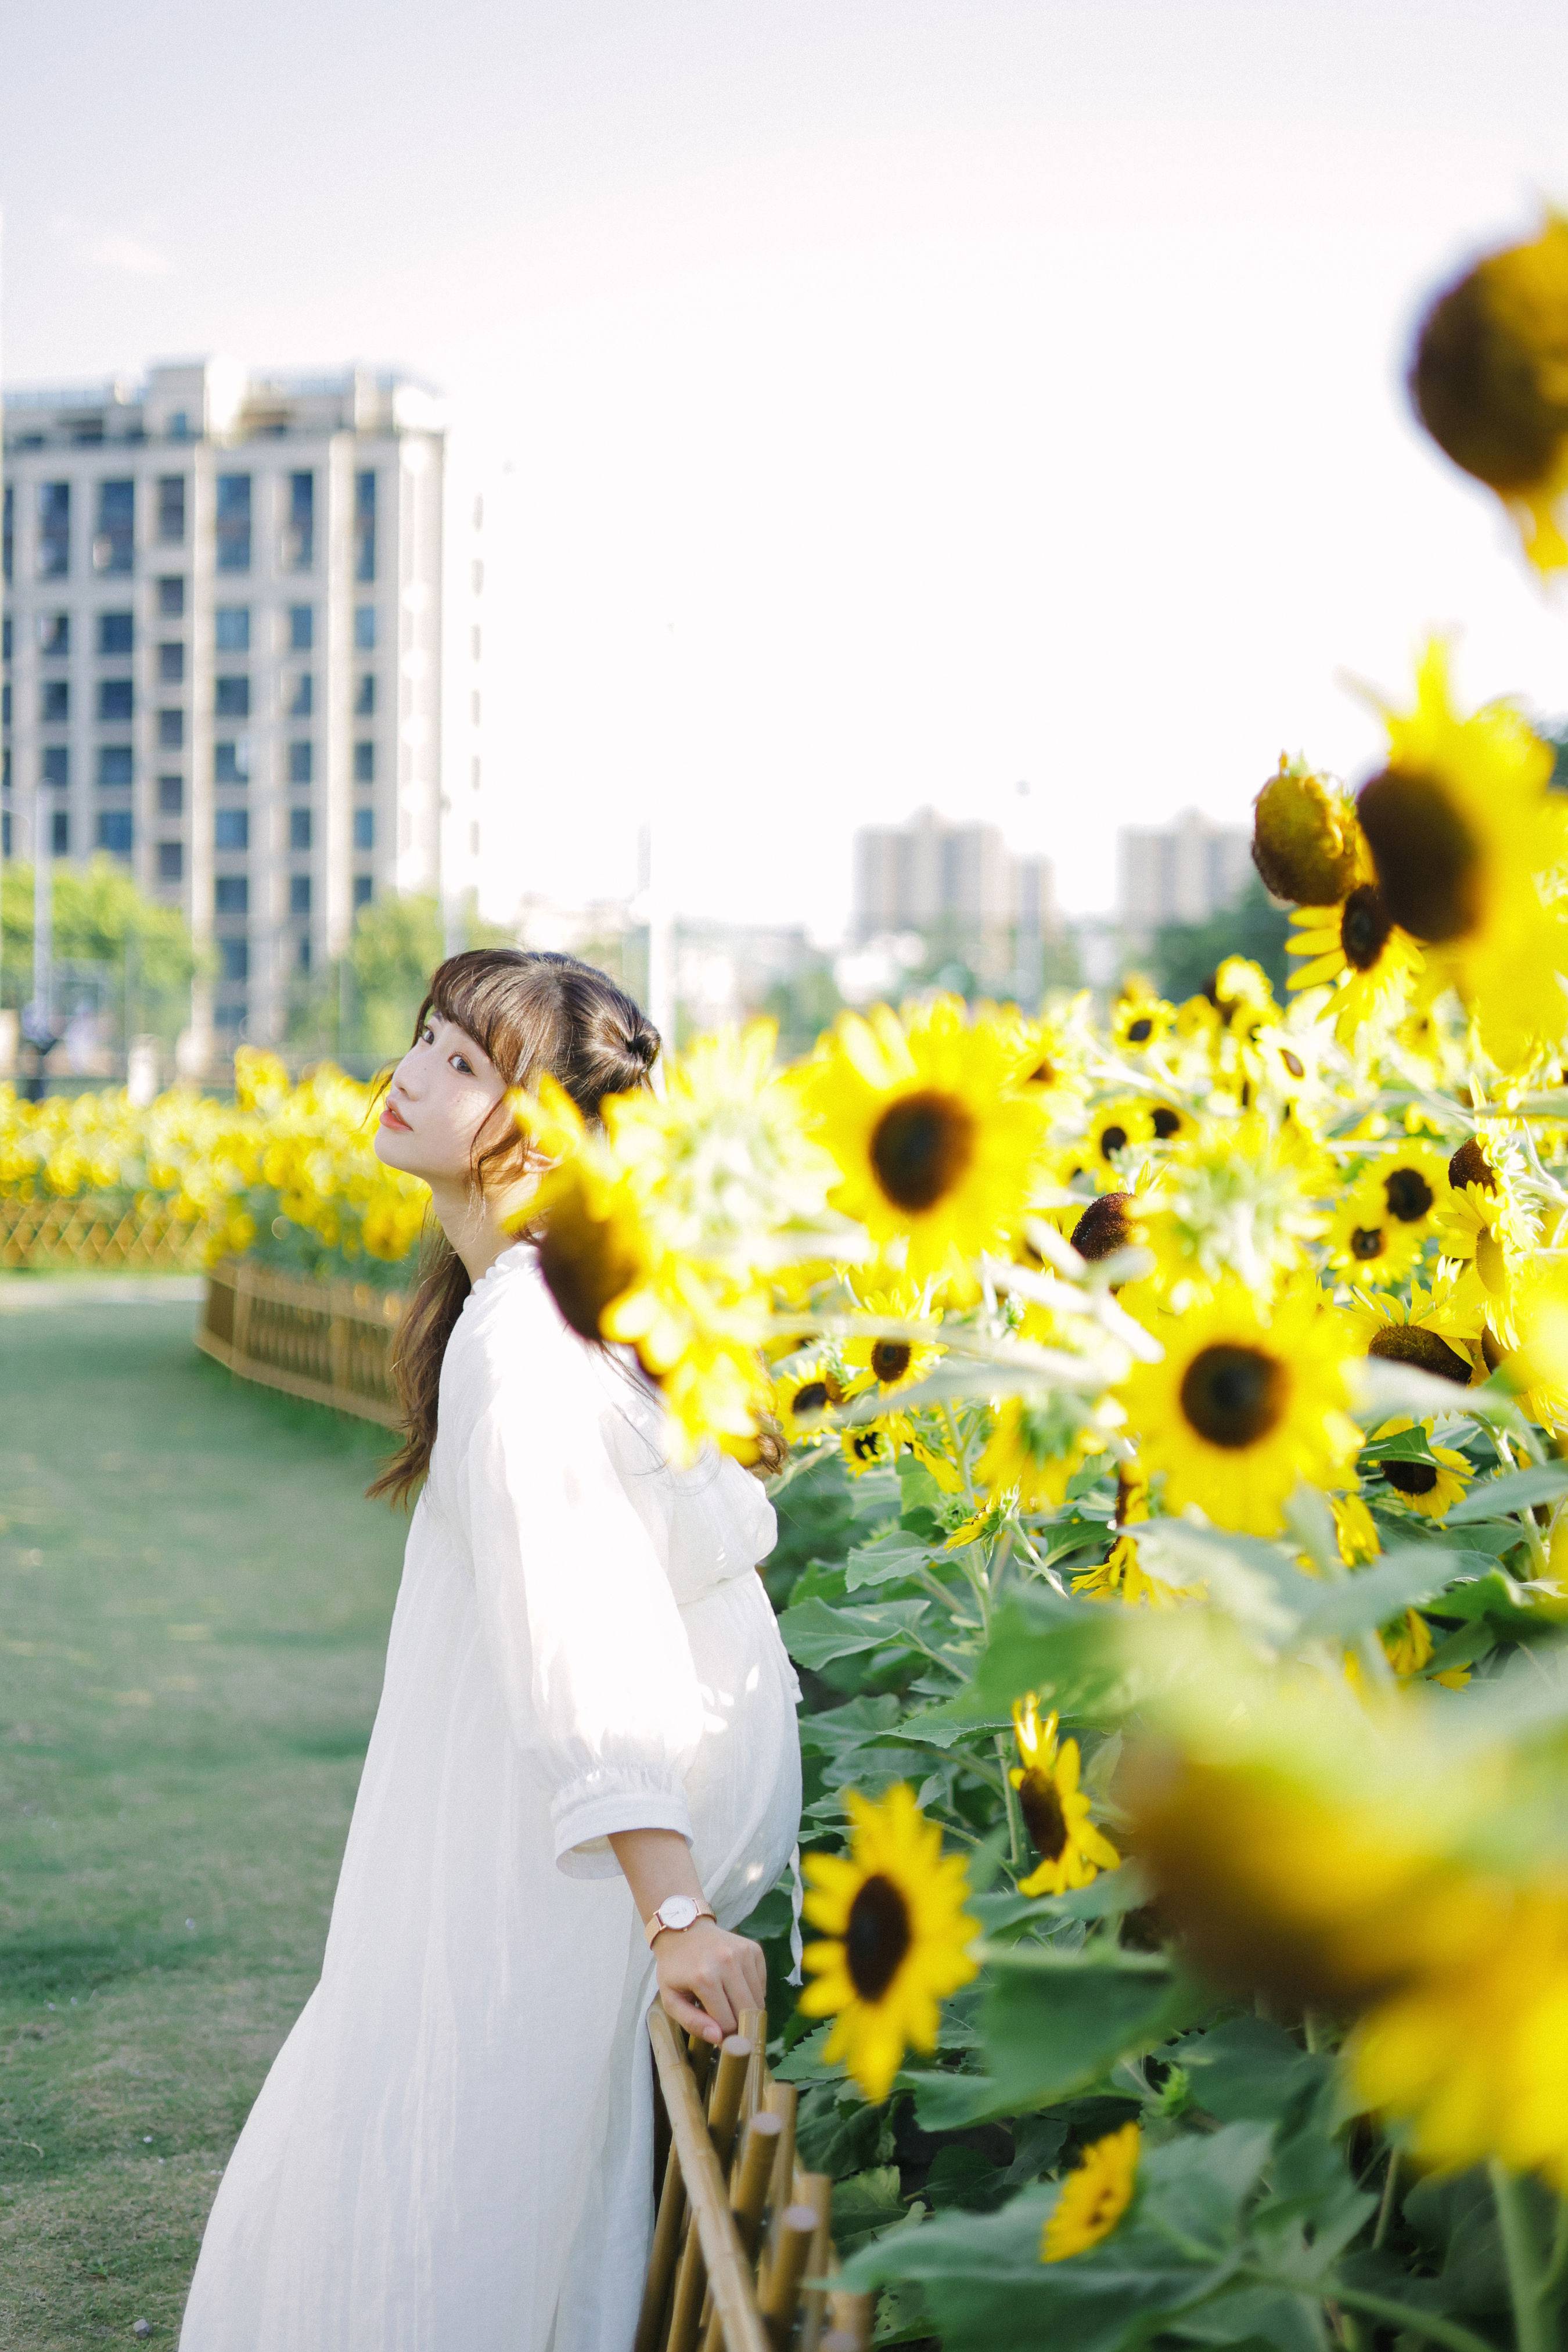 阳光下的花和你 日系 少女 向日葵 花 写真集&YiTuYu艺图语-2